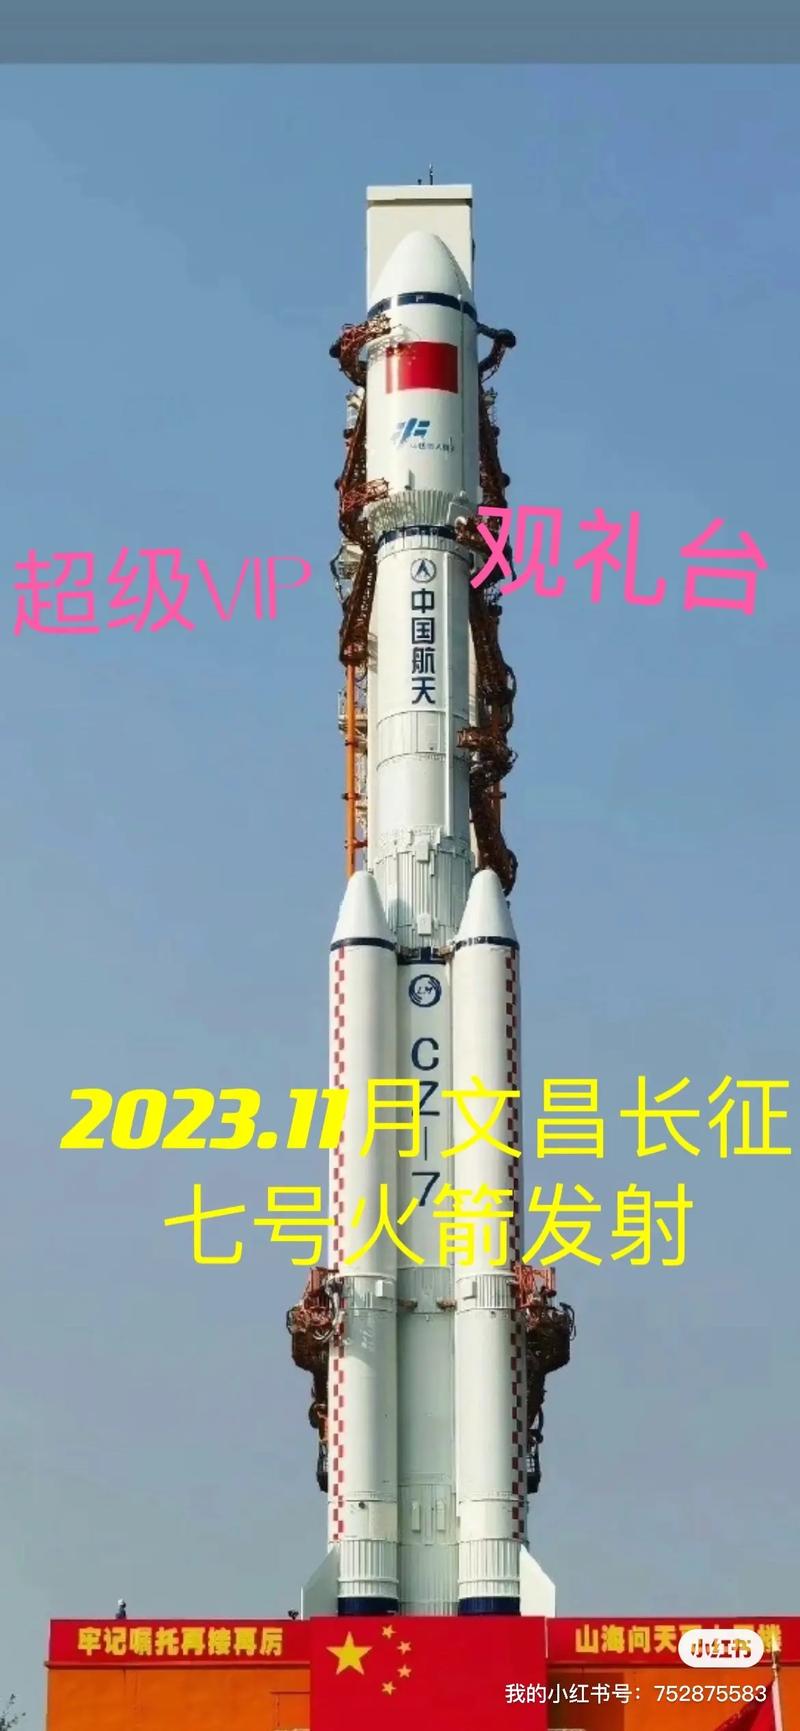 航天火箭,长征七号,2023.11月发射  超级超级,0808超 - 抖音